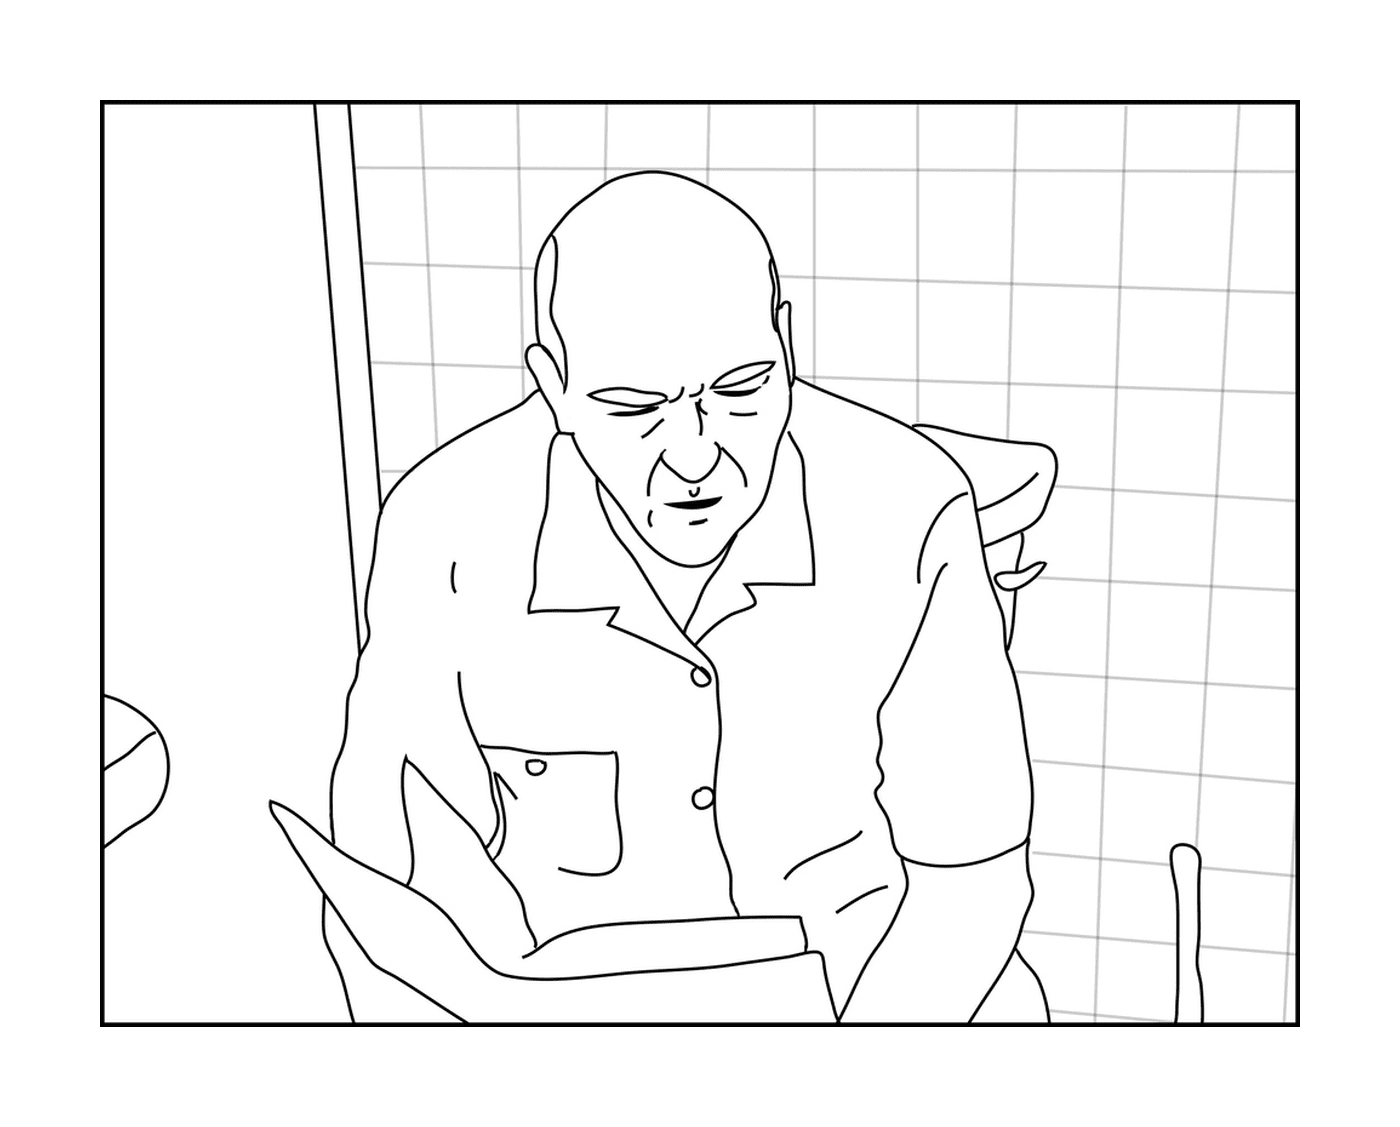 Hank on a toilet Breaking Bad